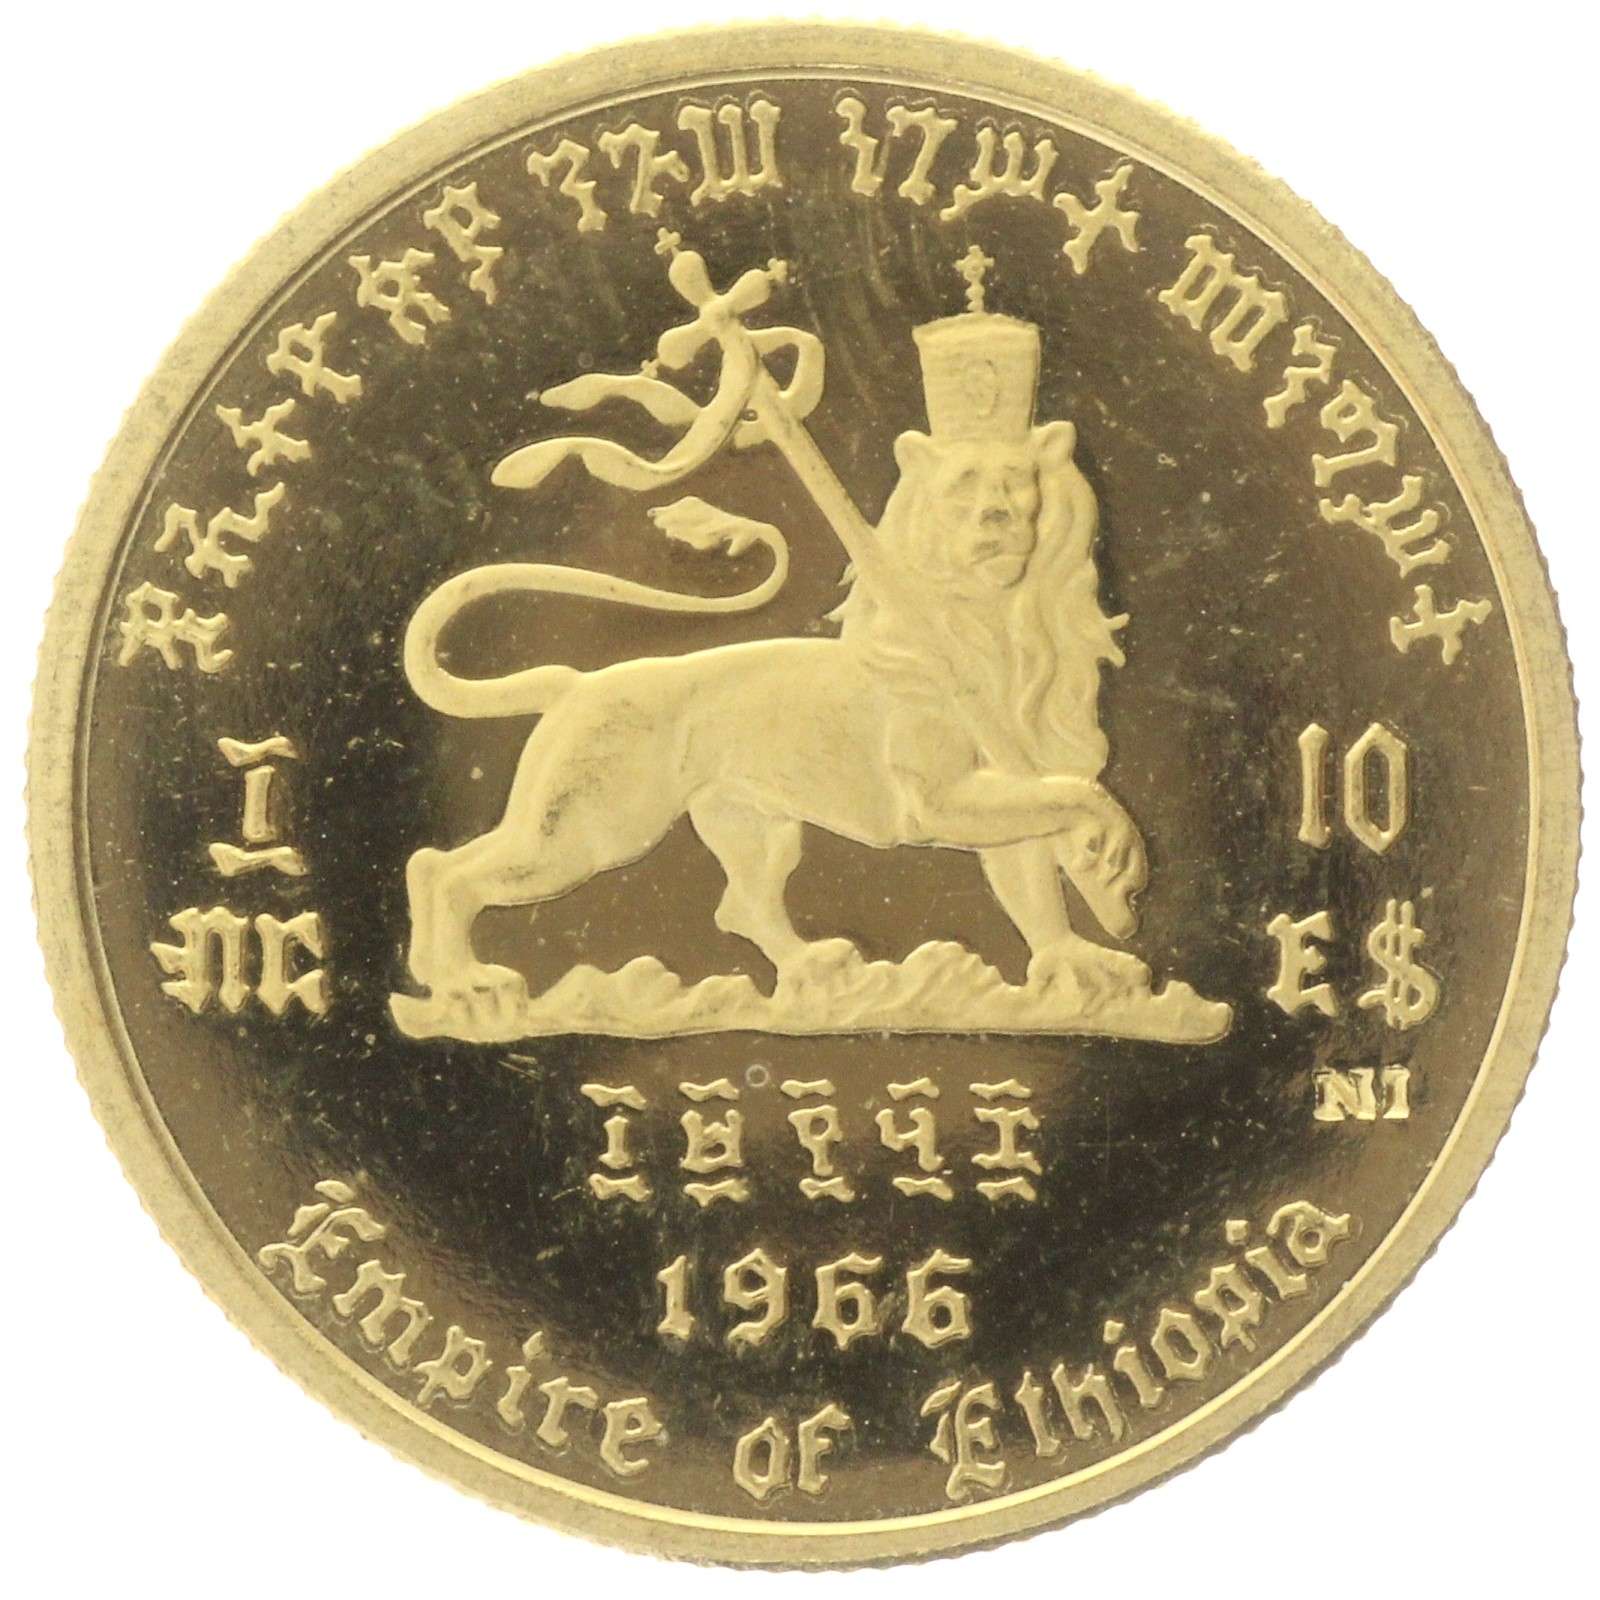 Ethiopia - 10 Dollars - 1966 - Hailé Selassié I 